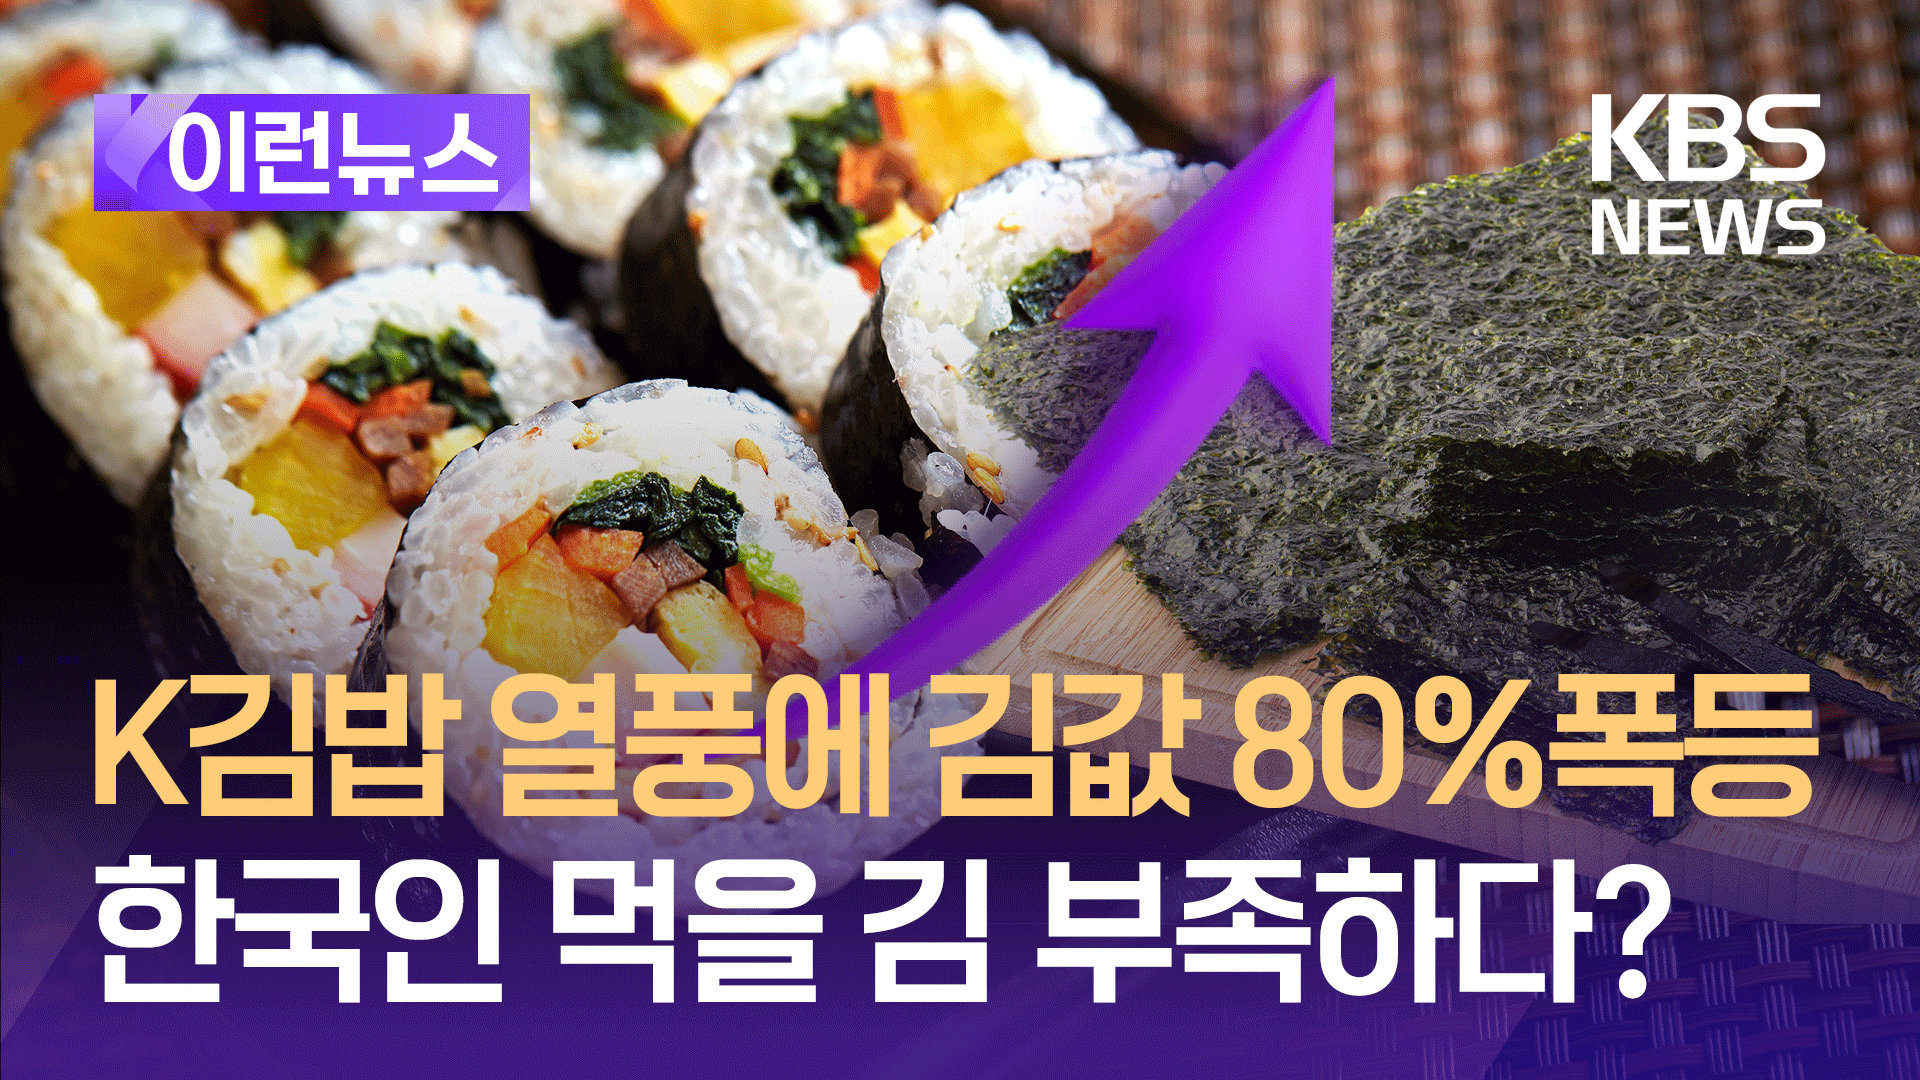 K-김밥 돌풍에 김값 80% 급등…한국인 먹을 김이 부족하다?